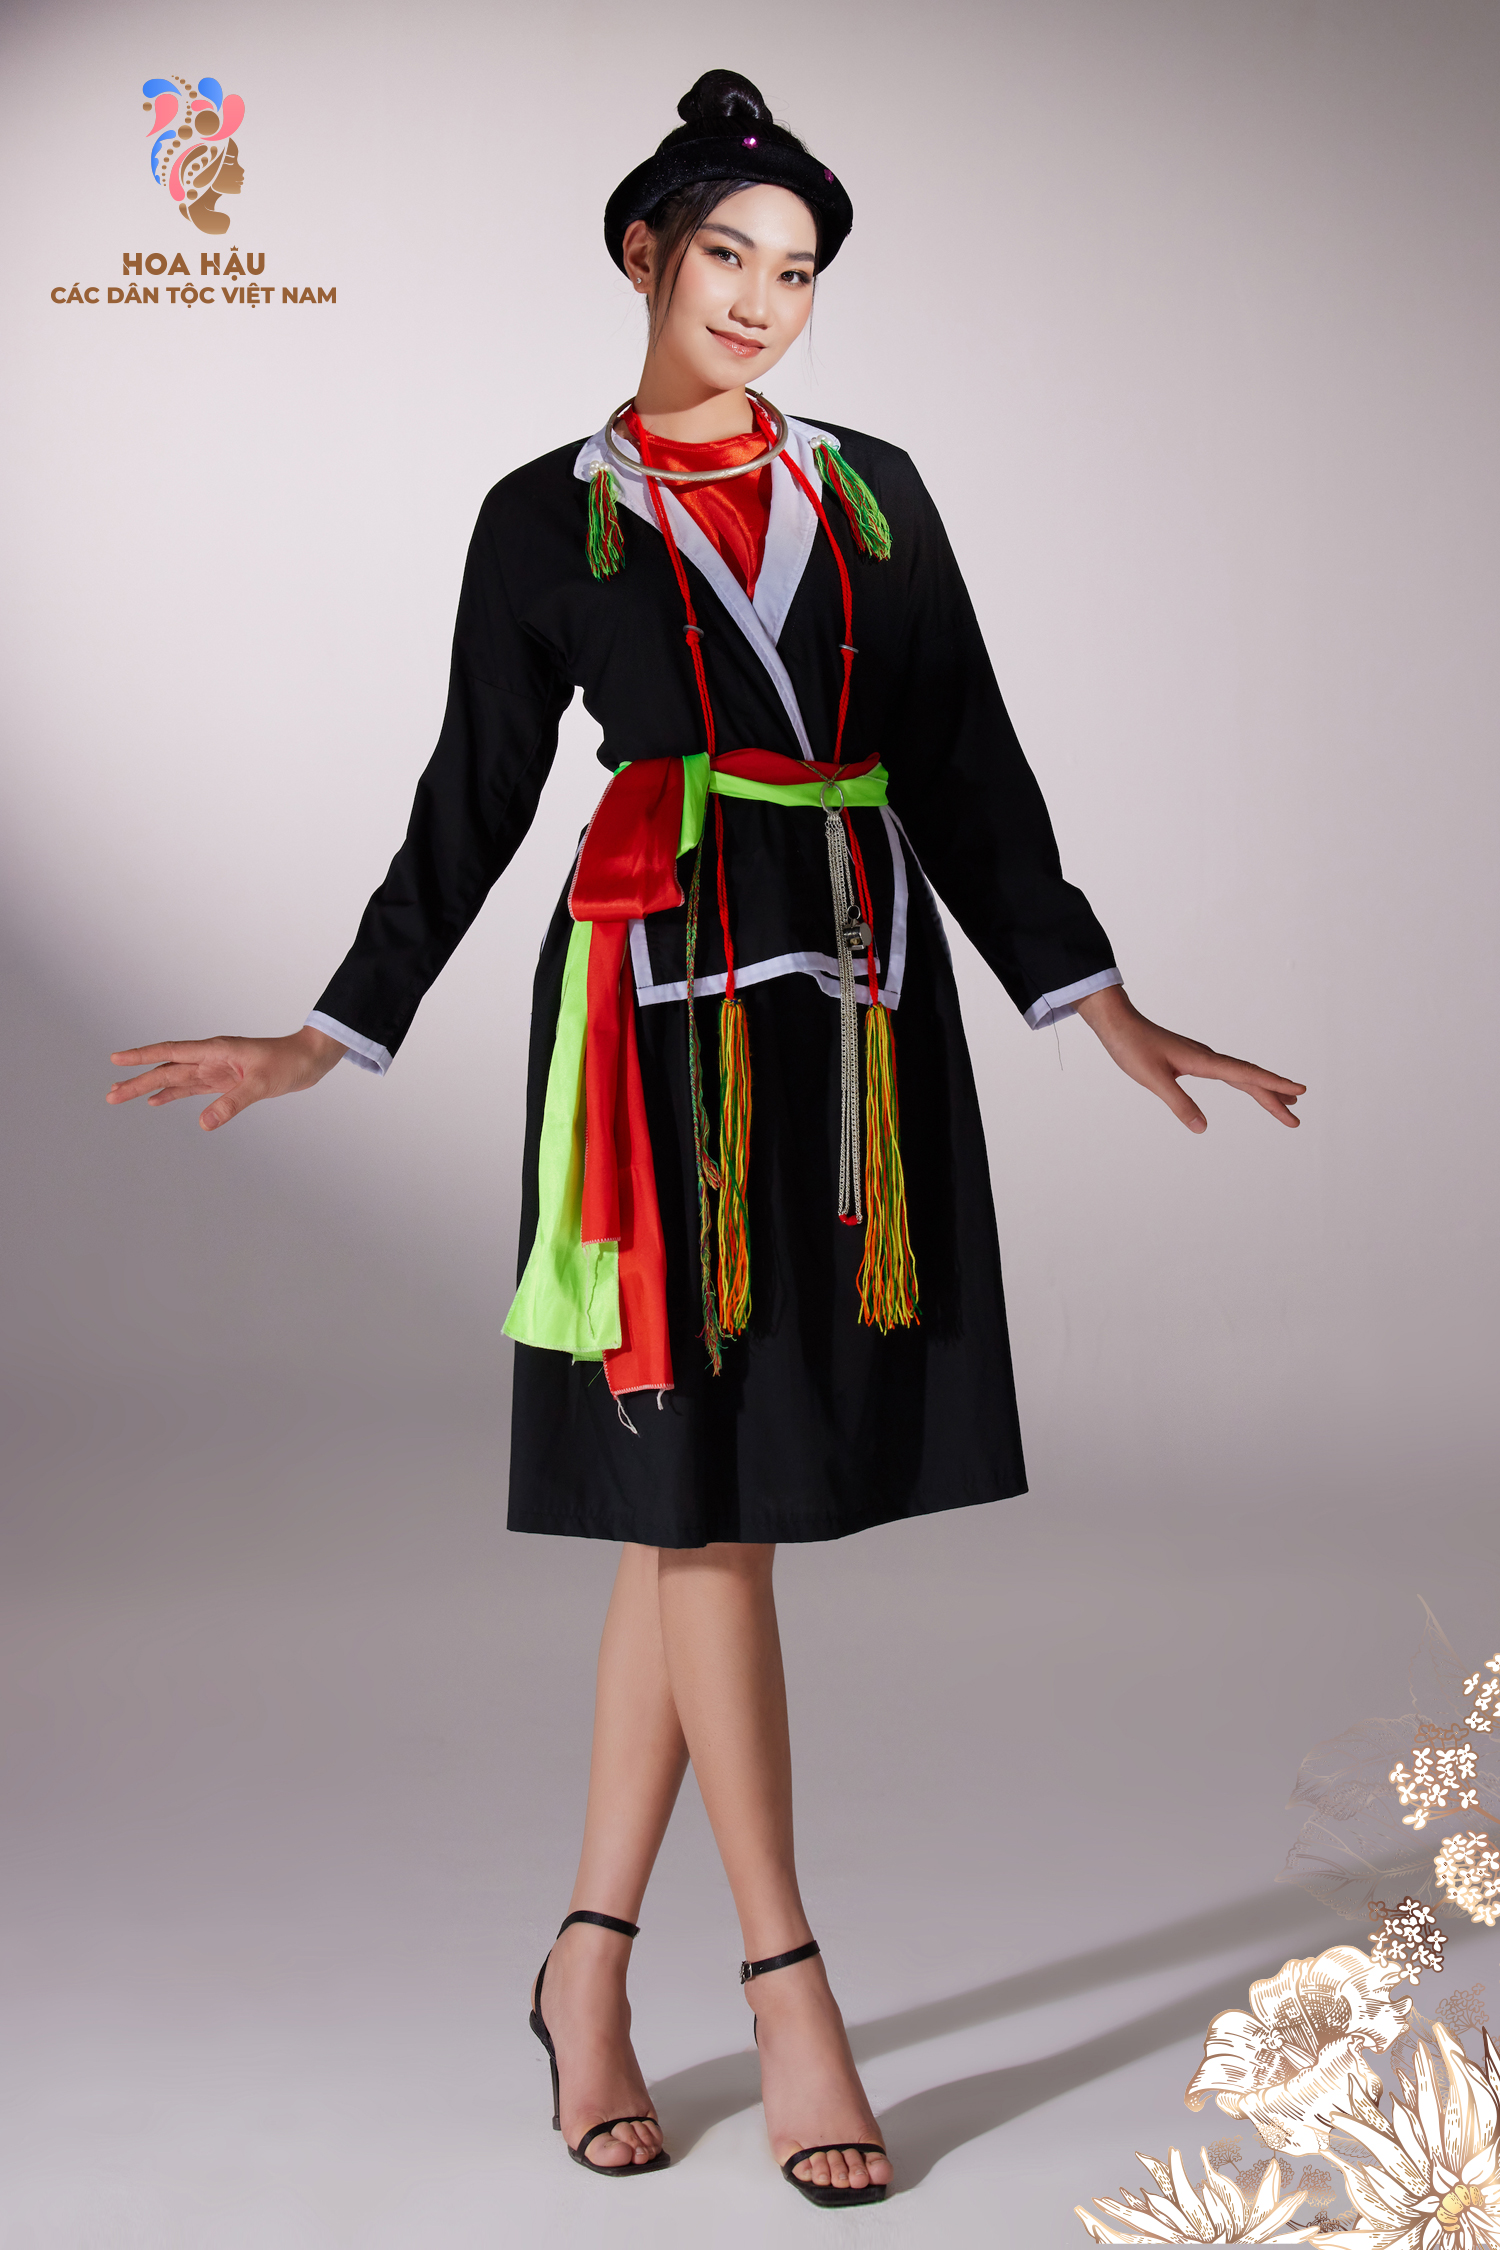 11 dân tộc tuyệt đẹp với những trang phục truyền thống độc đáo, là sự kết hợp tuyệt vời giữa màu sắc và họa tiết, mang đậm bản sắc dân tộc và giá trị văn hóa.